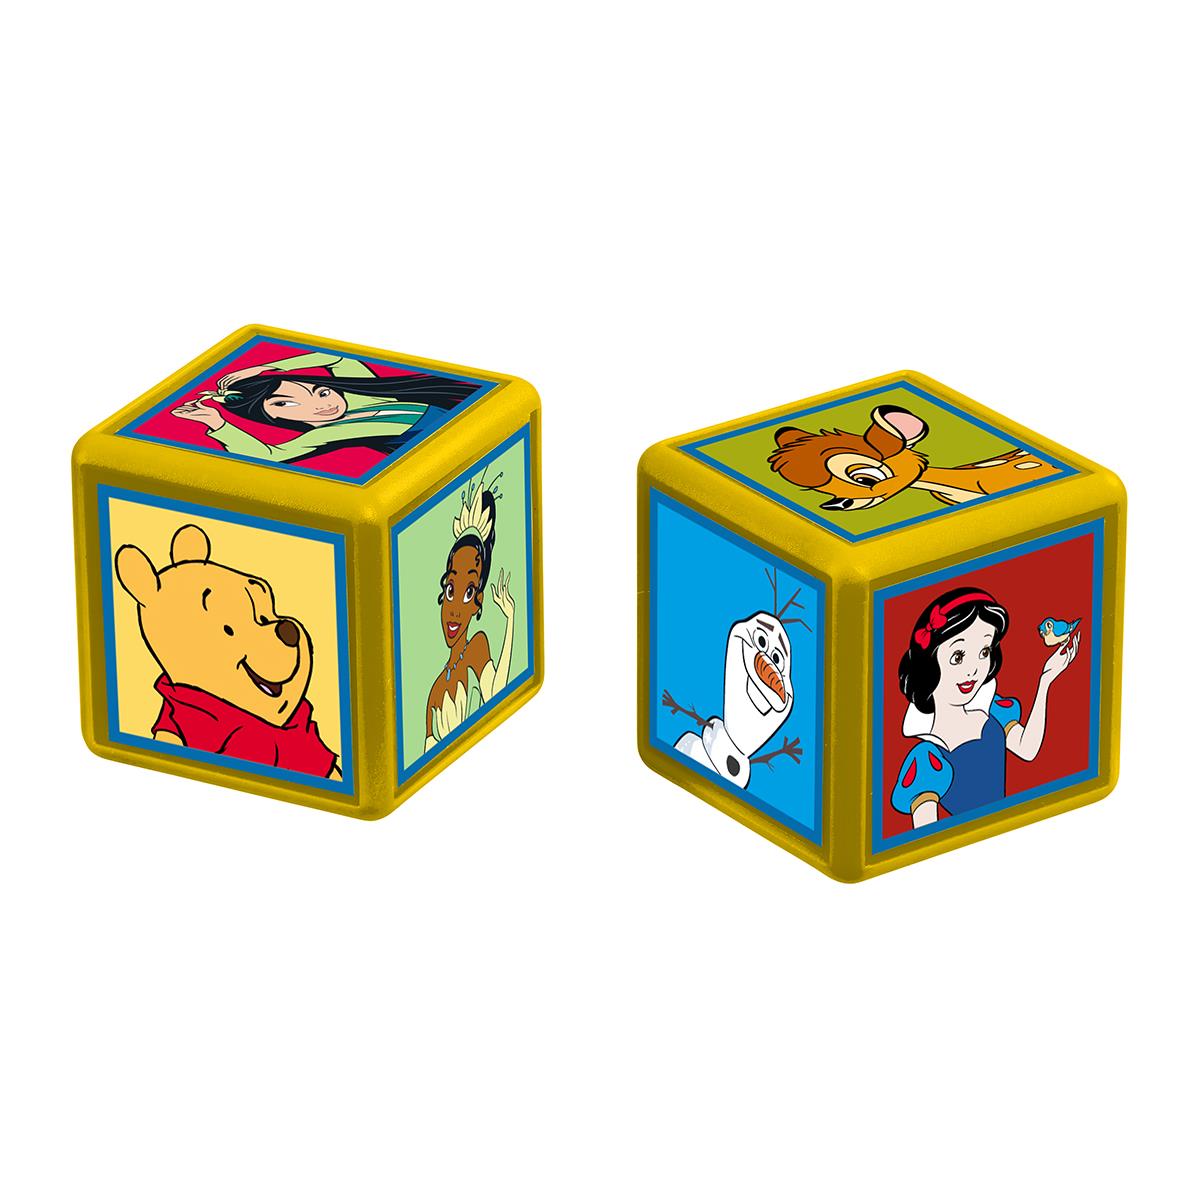 Disney Classics Top Trumps Match - The Crazy Cube Game